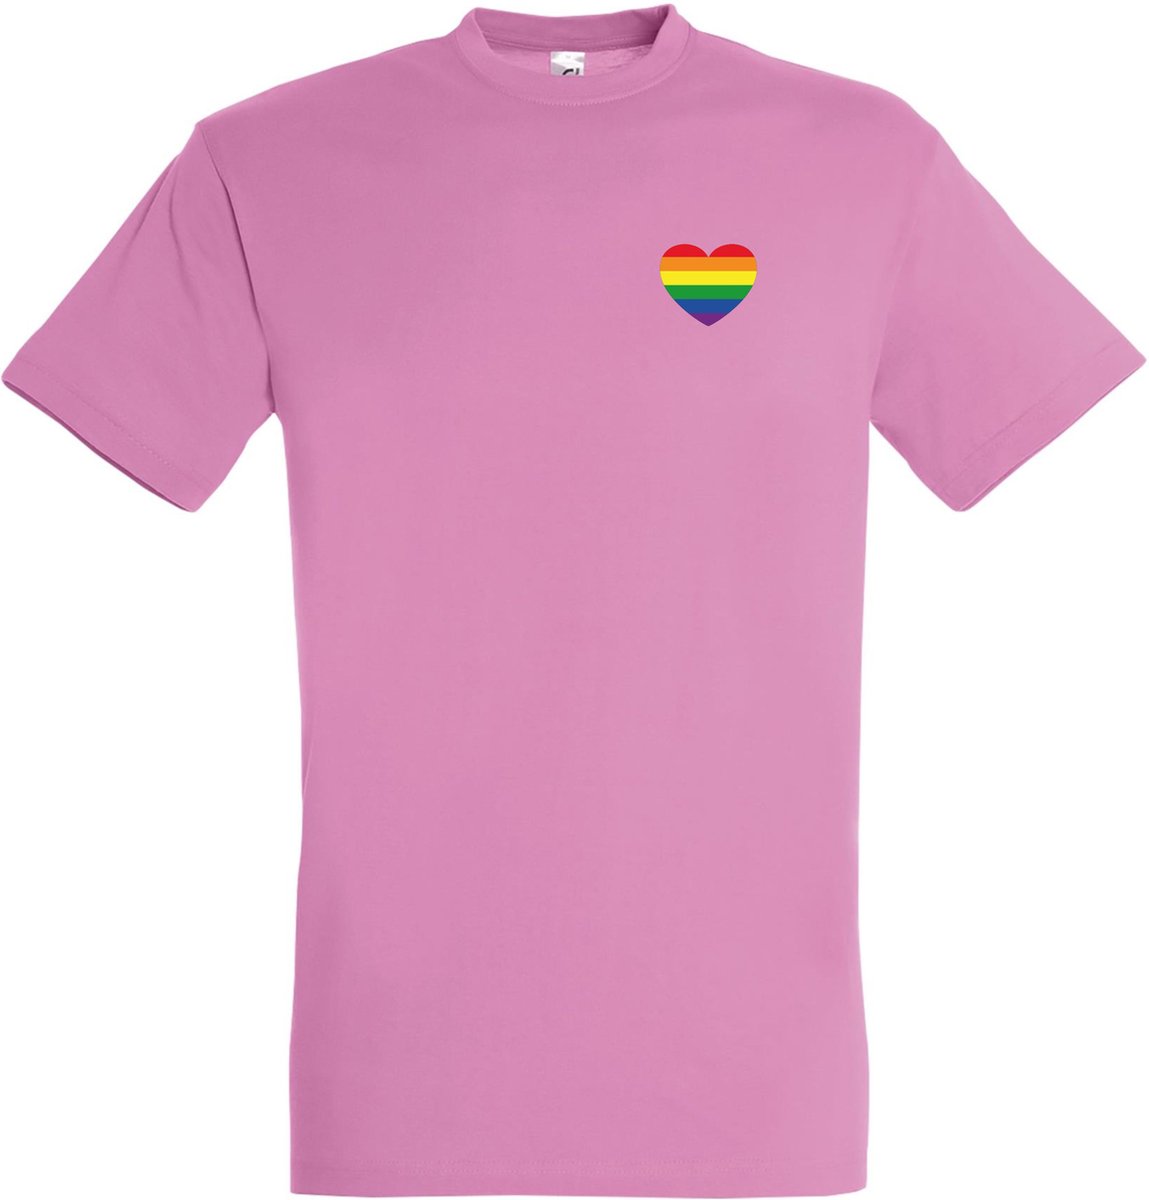 T-shirt Regenboog hartje | Regenboog vlag | Gay pride kleding | Pride shirt | Roze | maat XXL